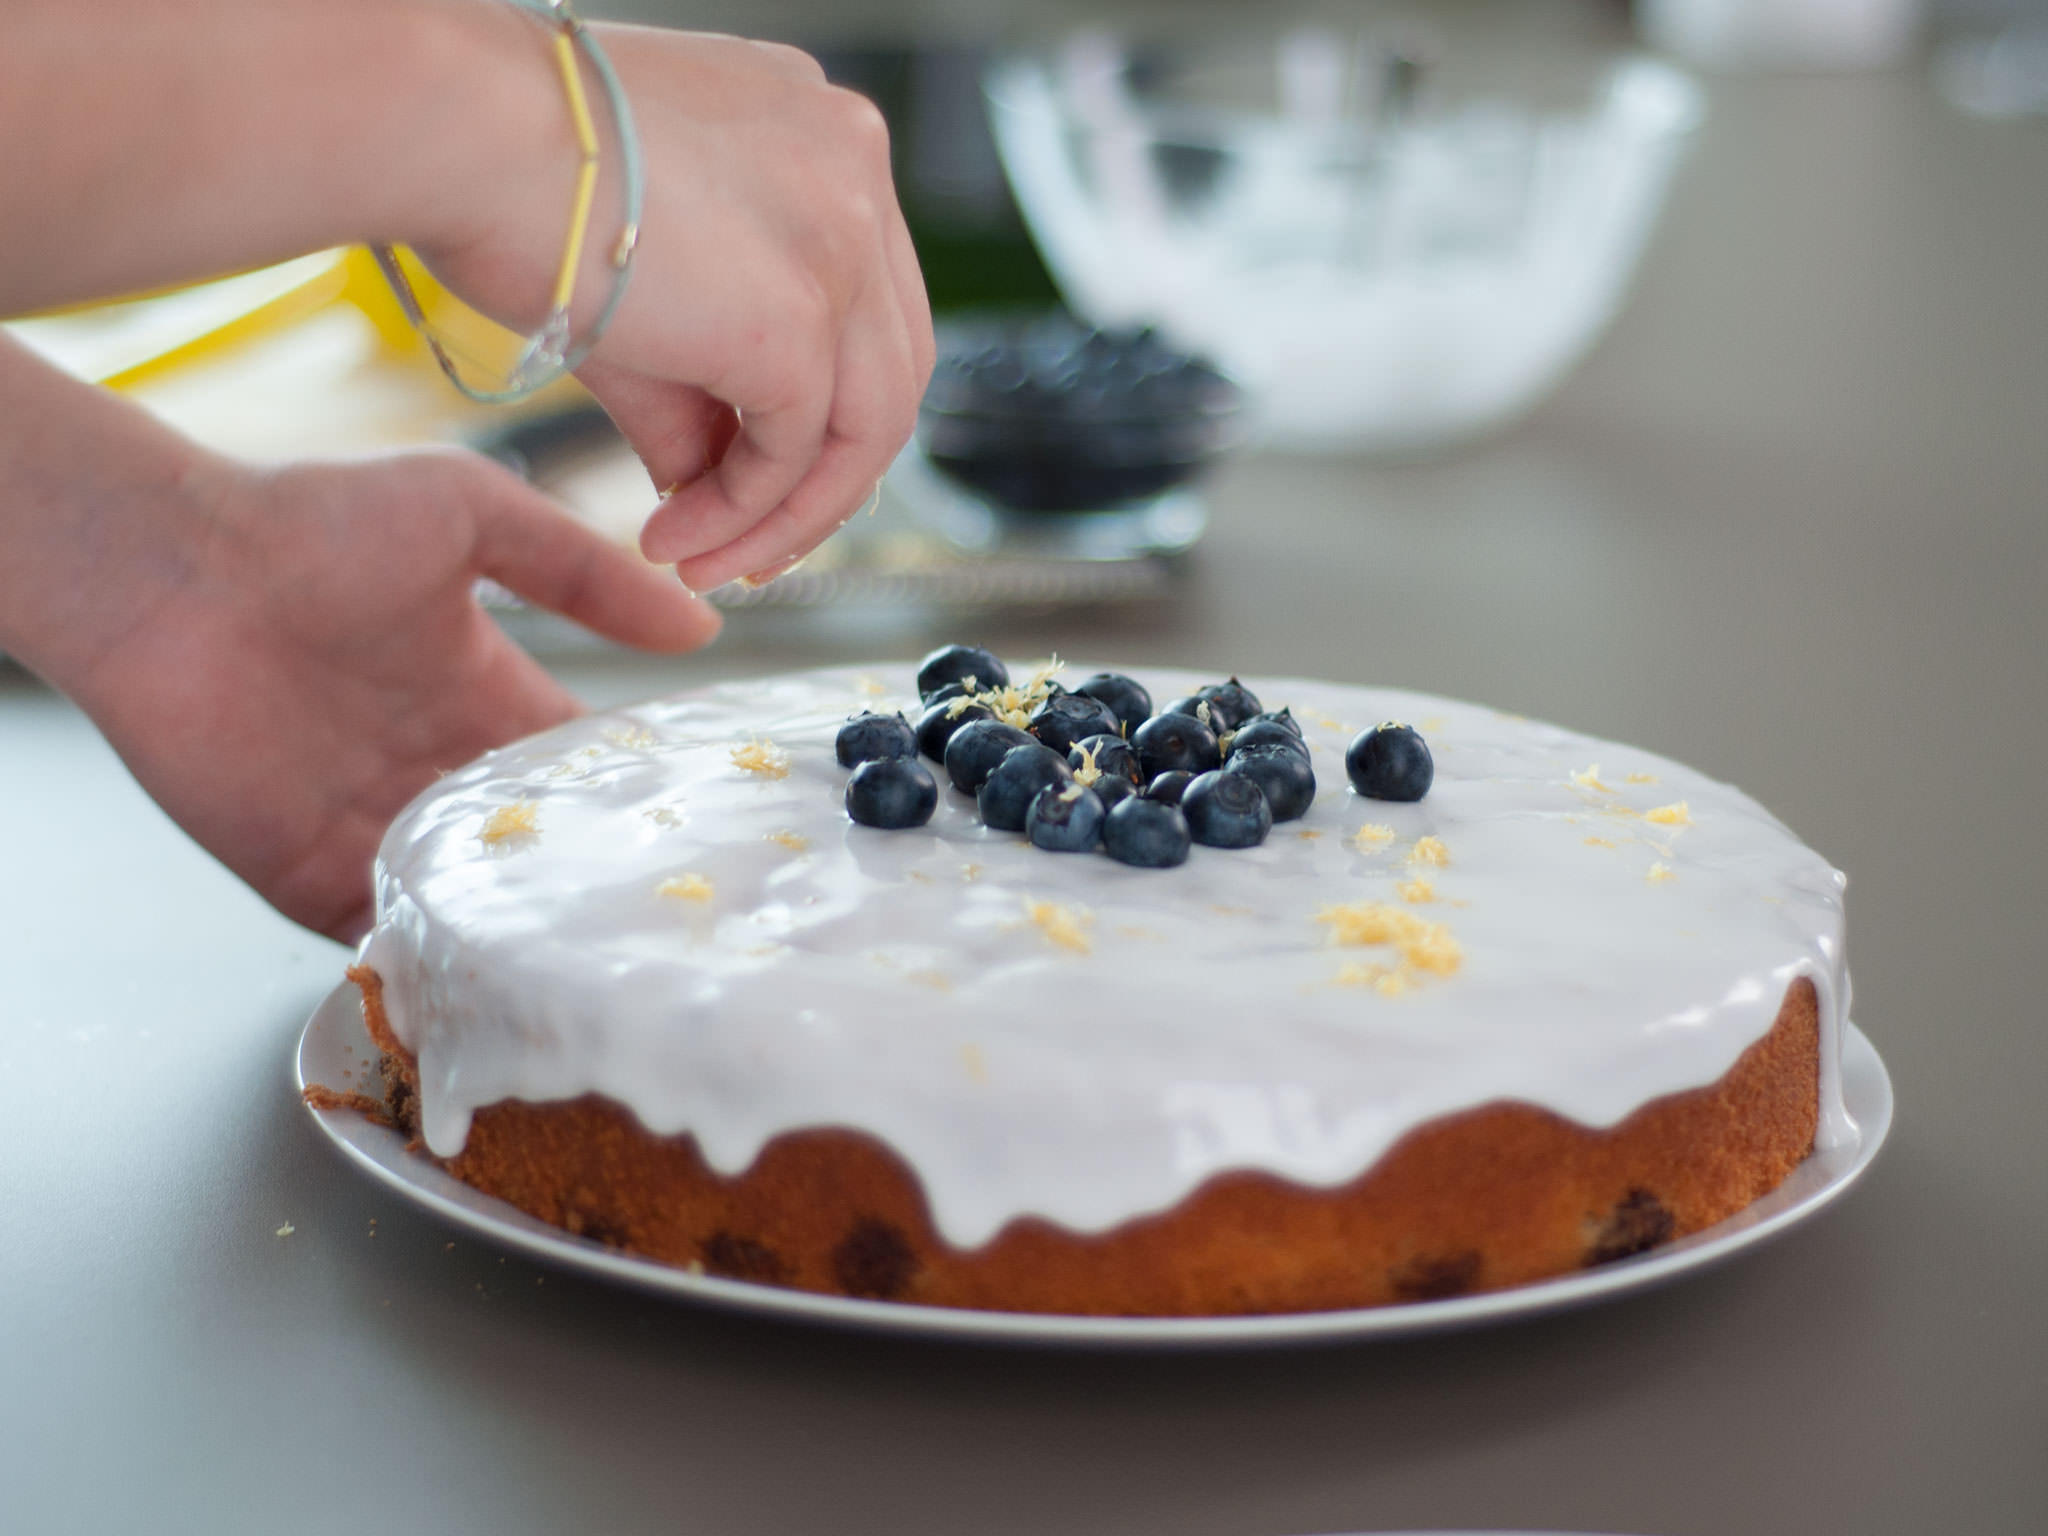 Fresh lemon cake with blueberries